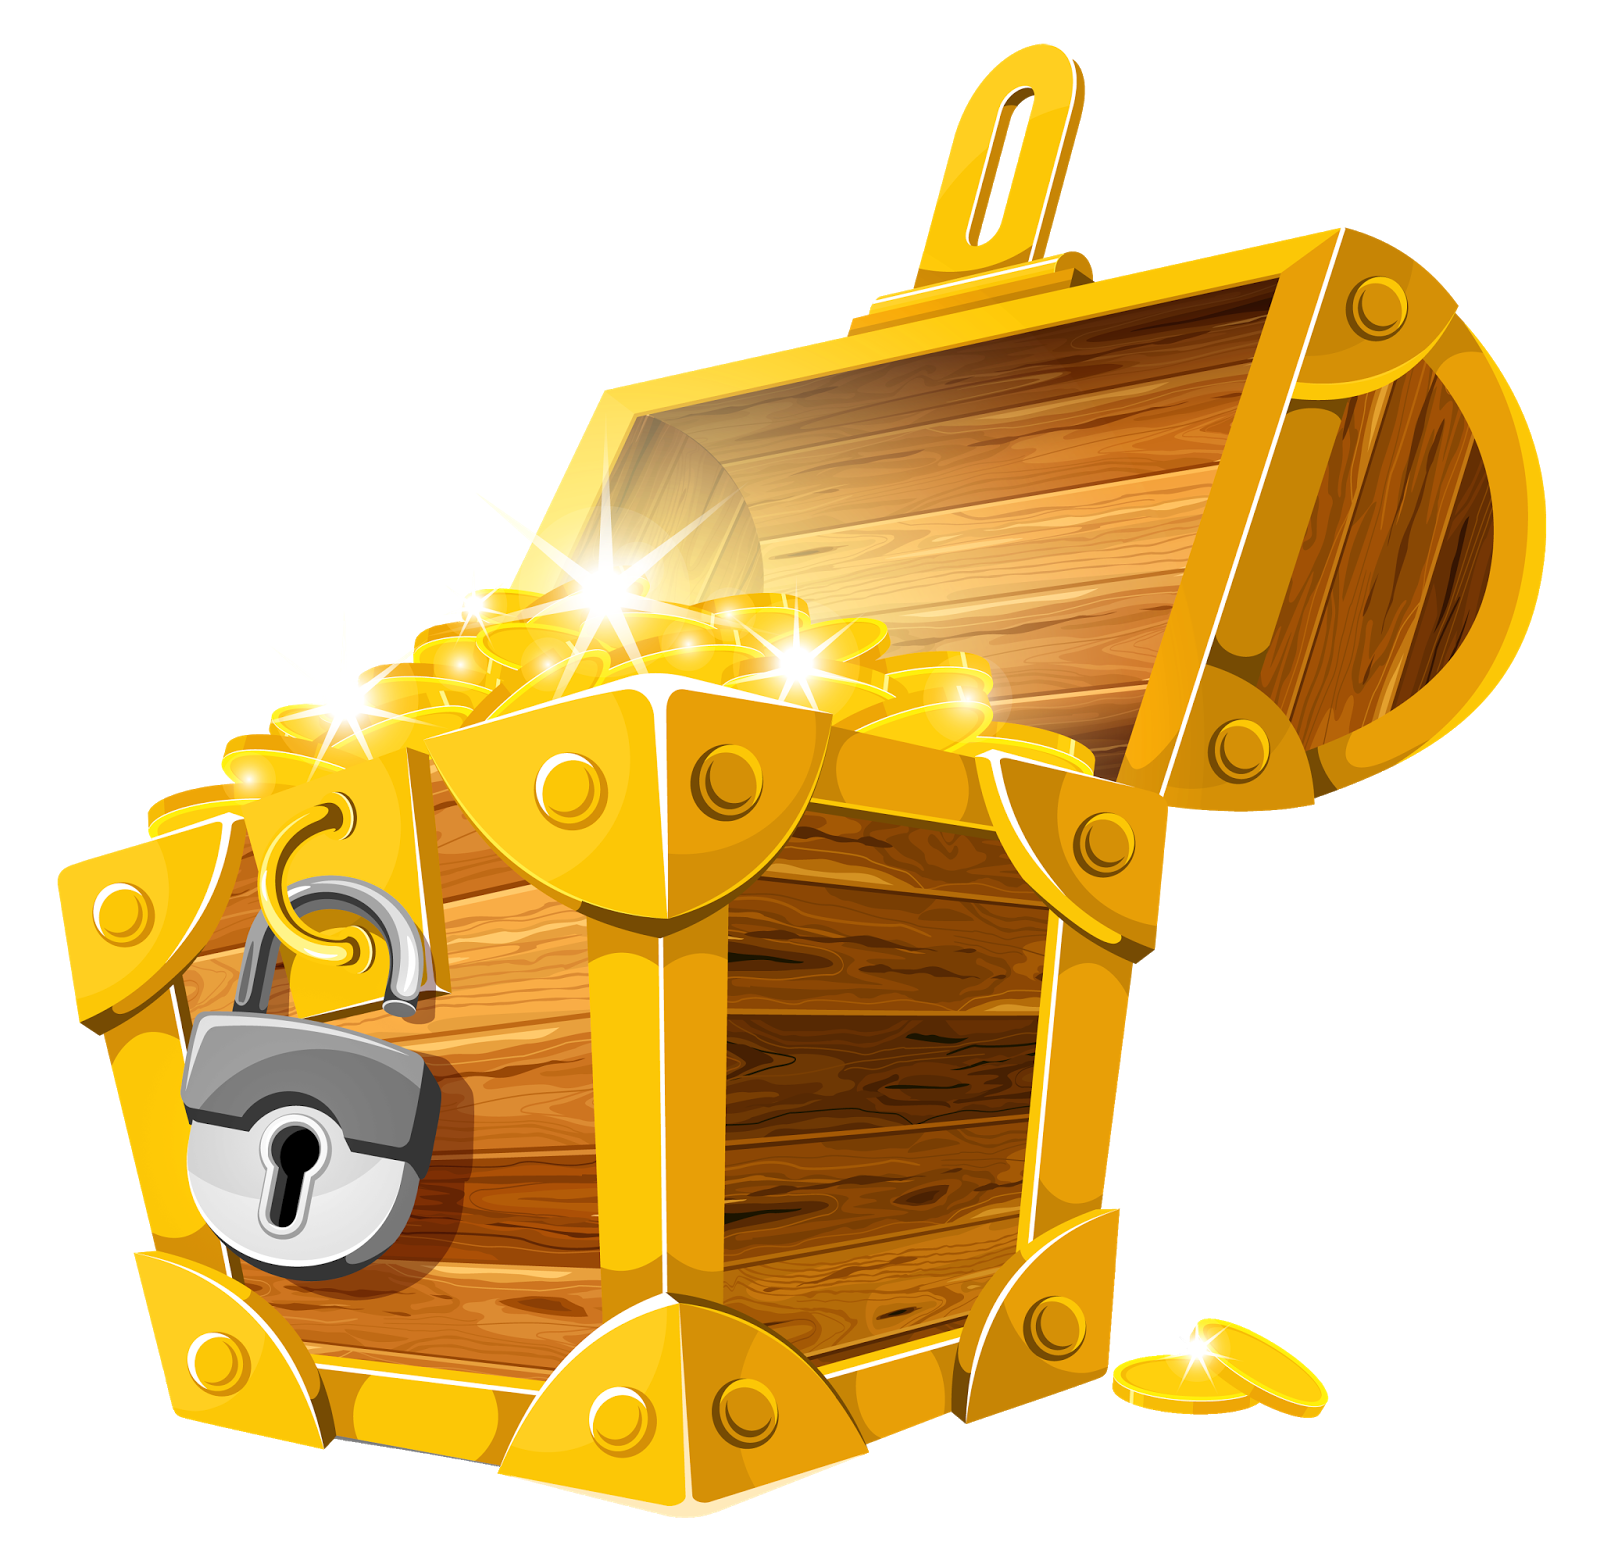 treasure chest key one piece odyssey